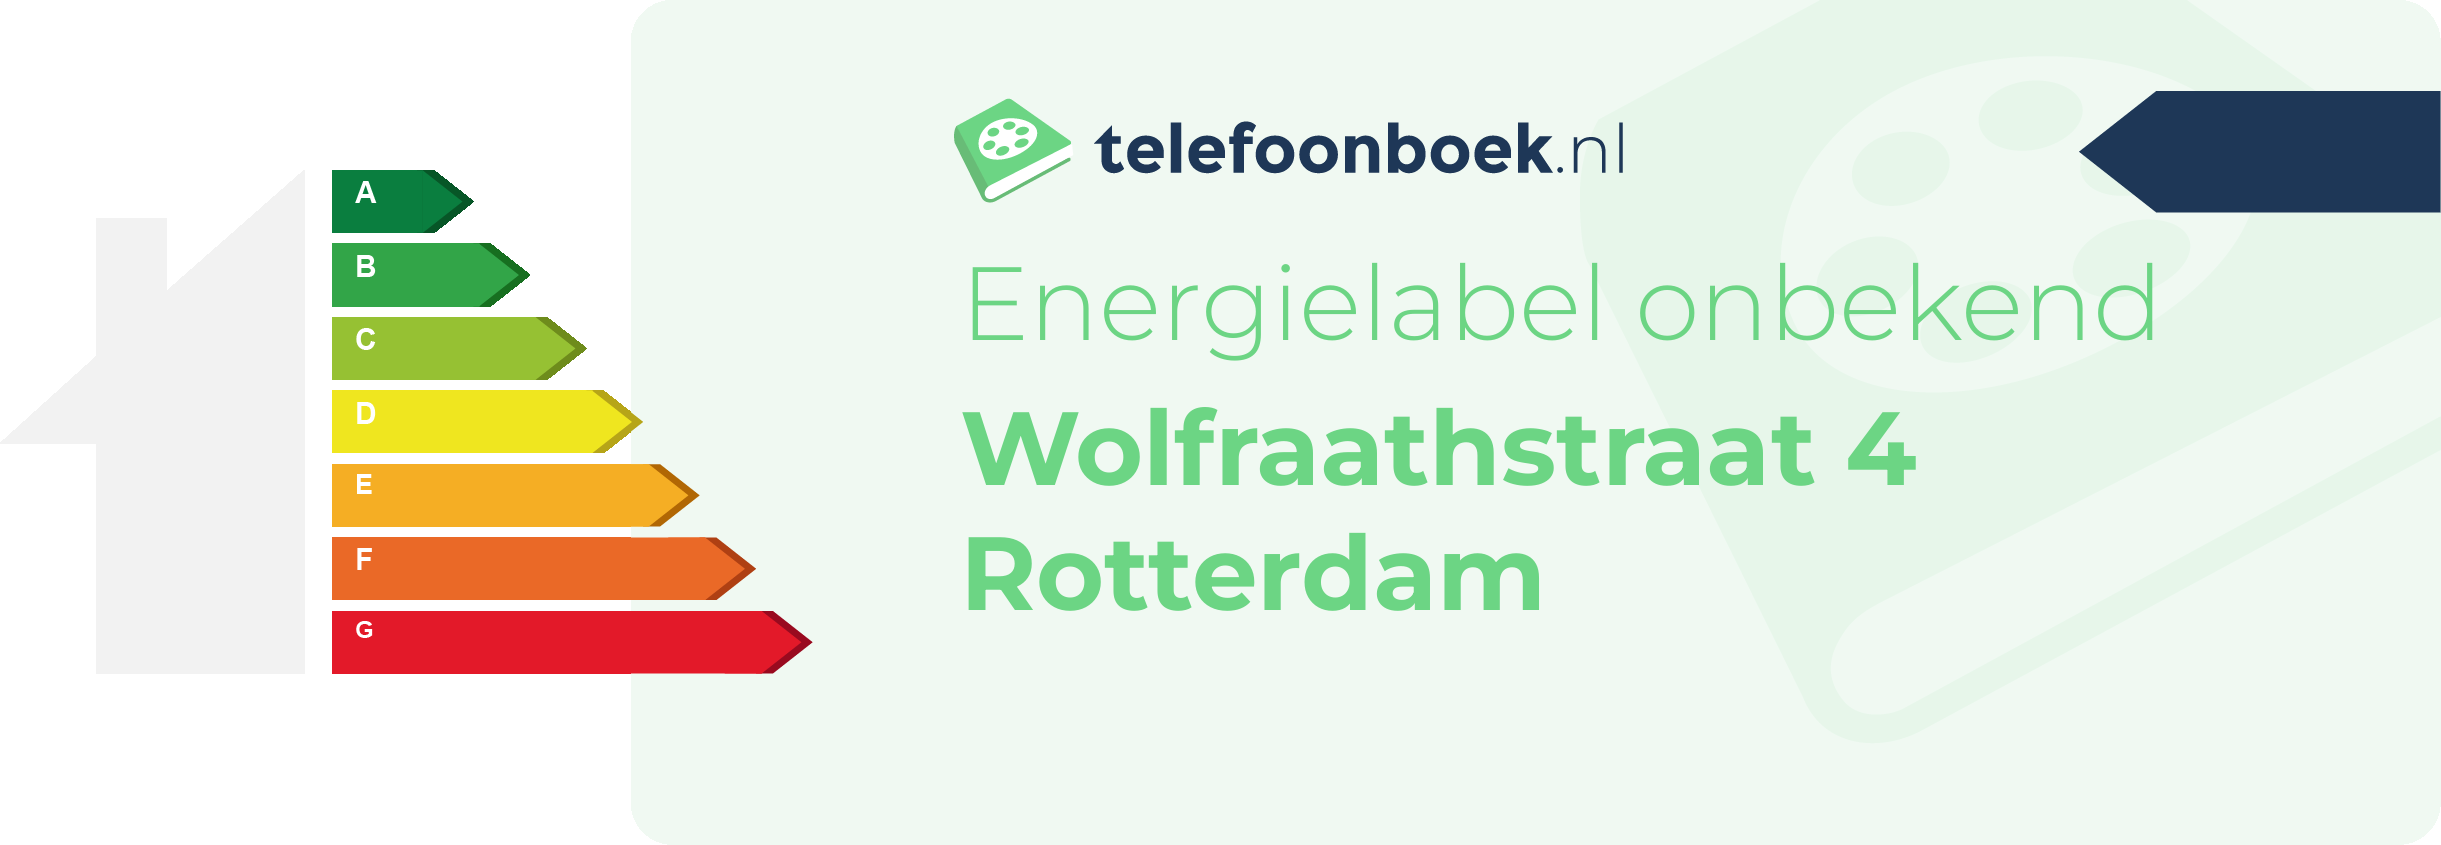 Energielabel Wolfraathstraat 4 Rotterdam